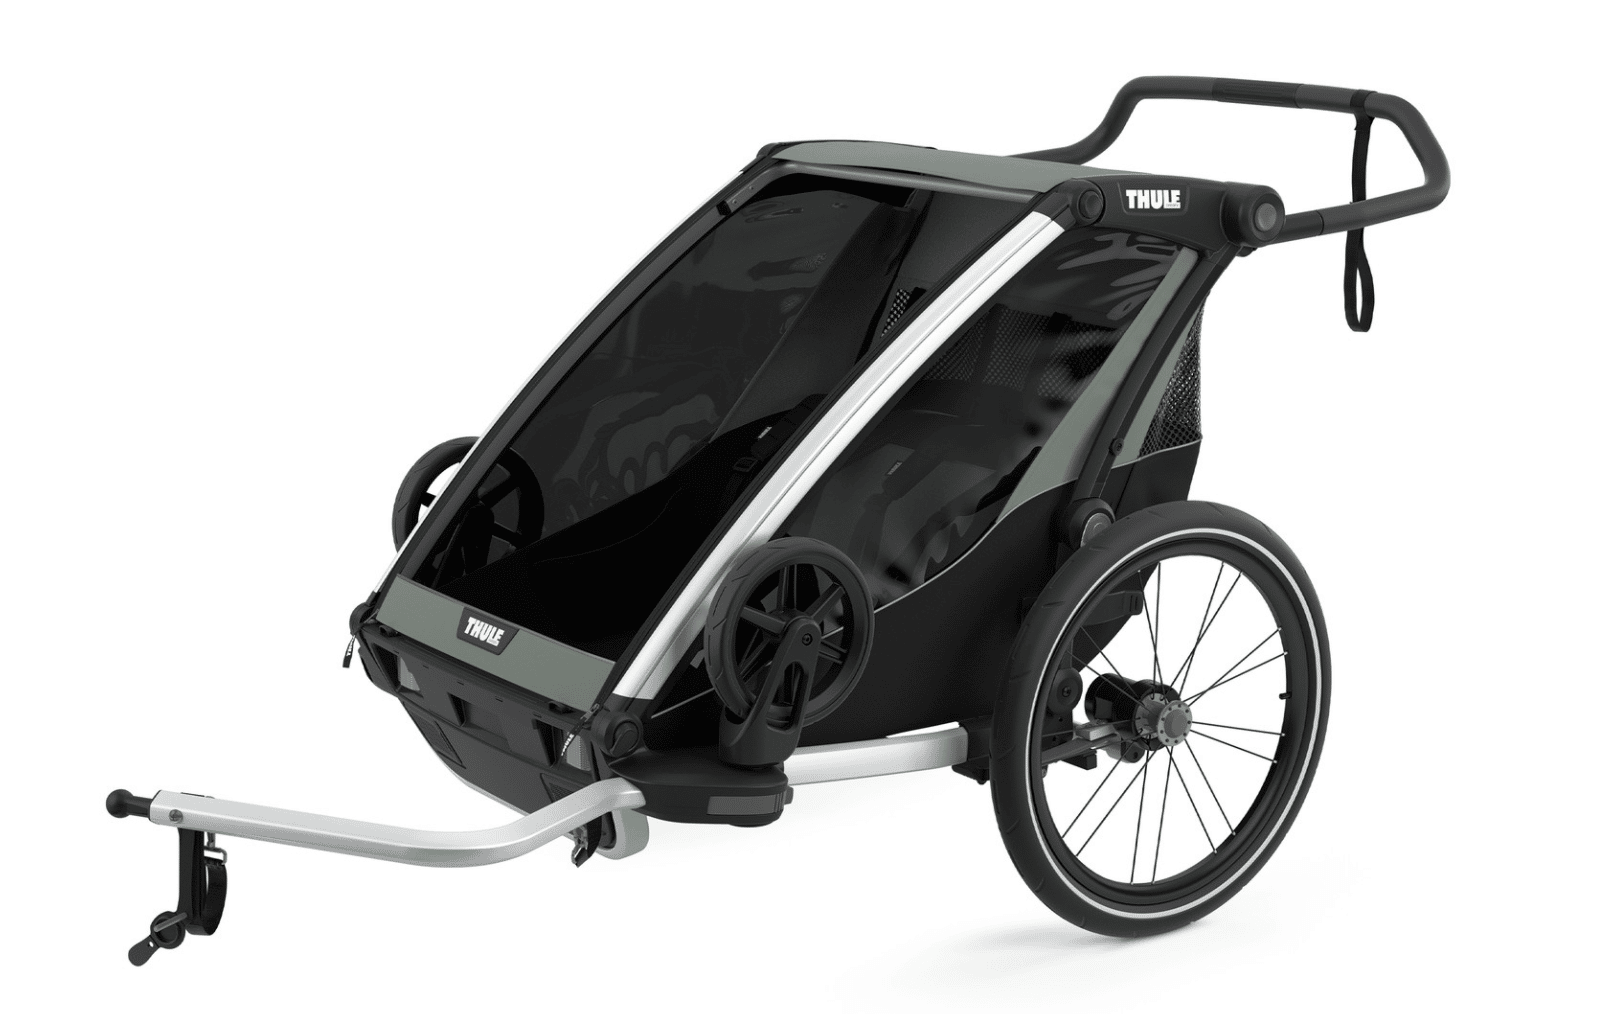 belasting Een centrale tool die een belangrijke rol speelt Wonder Thule Chariot Lite 2 - Fietskar.nl, de grootste in fietskarren